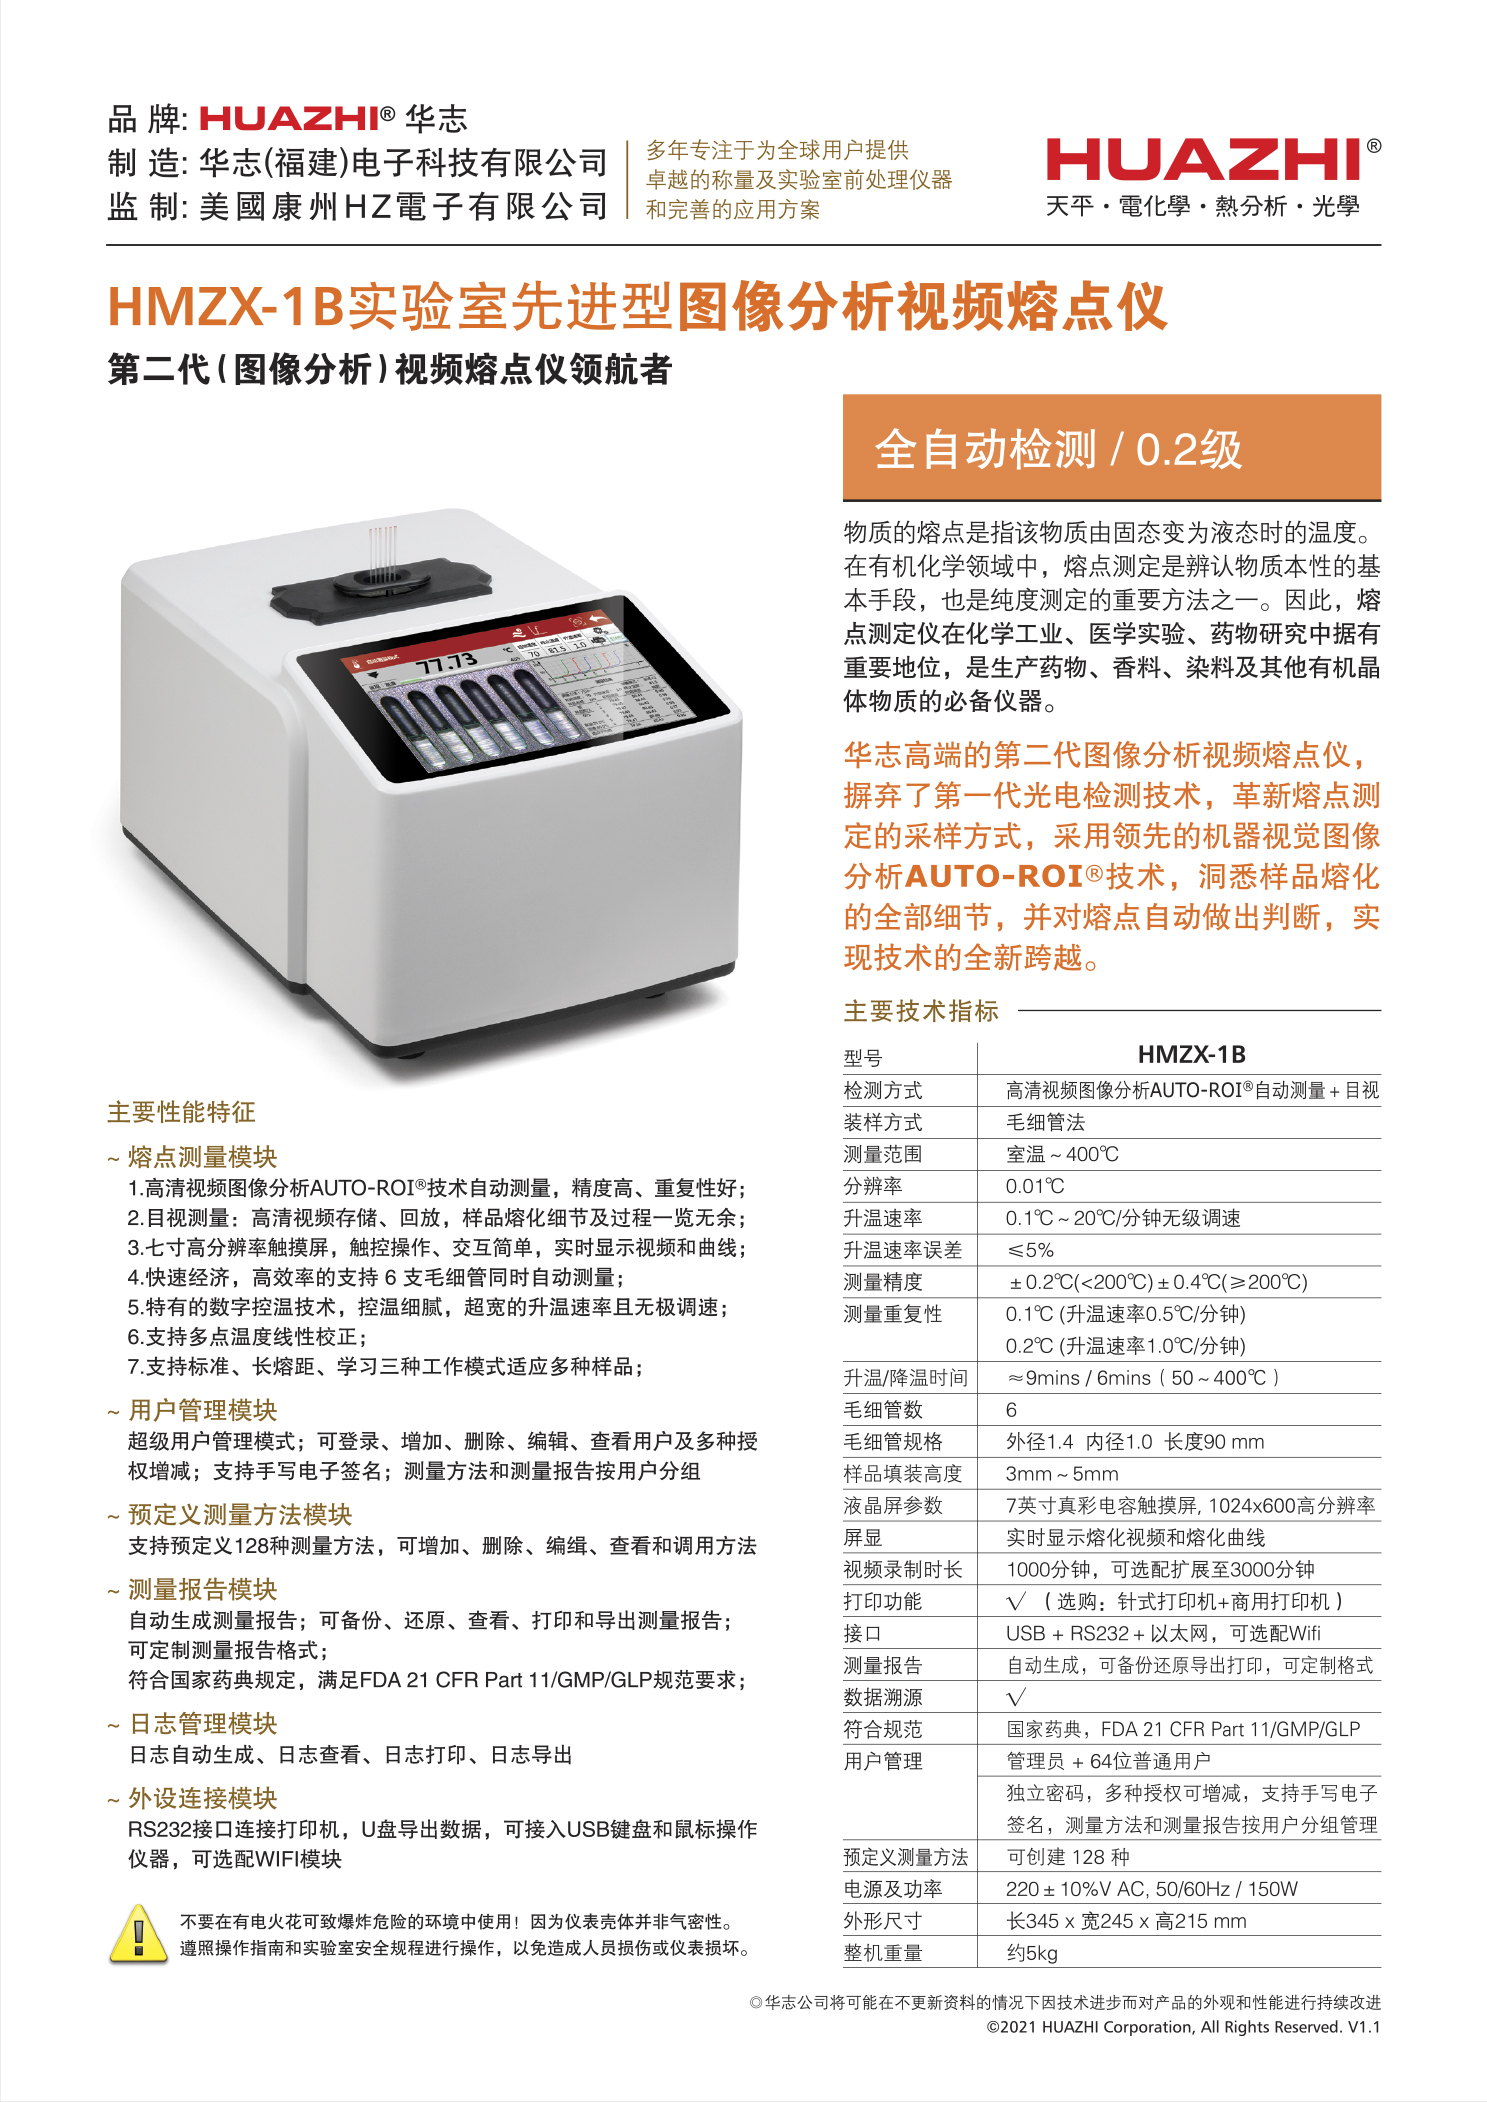 视频熔点仪HMZX-1B单机详情(中文v1.1).jpg